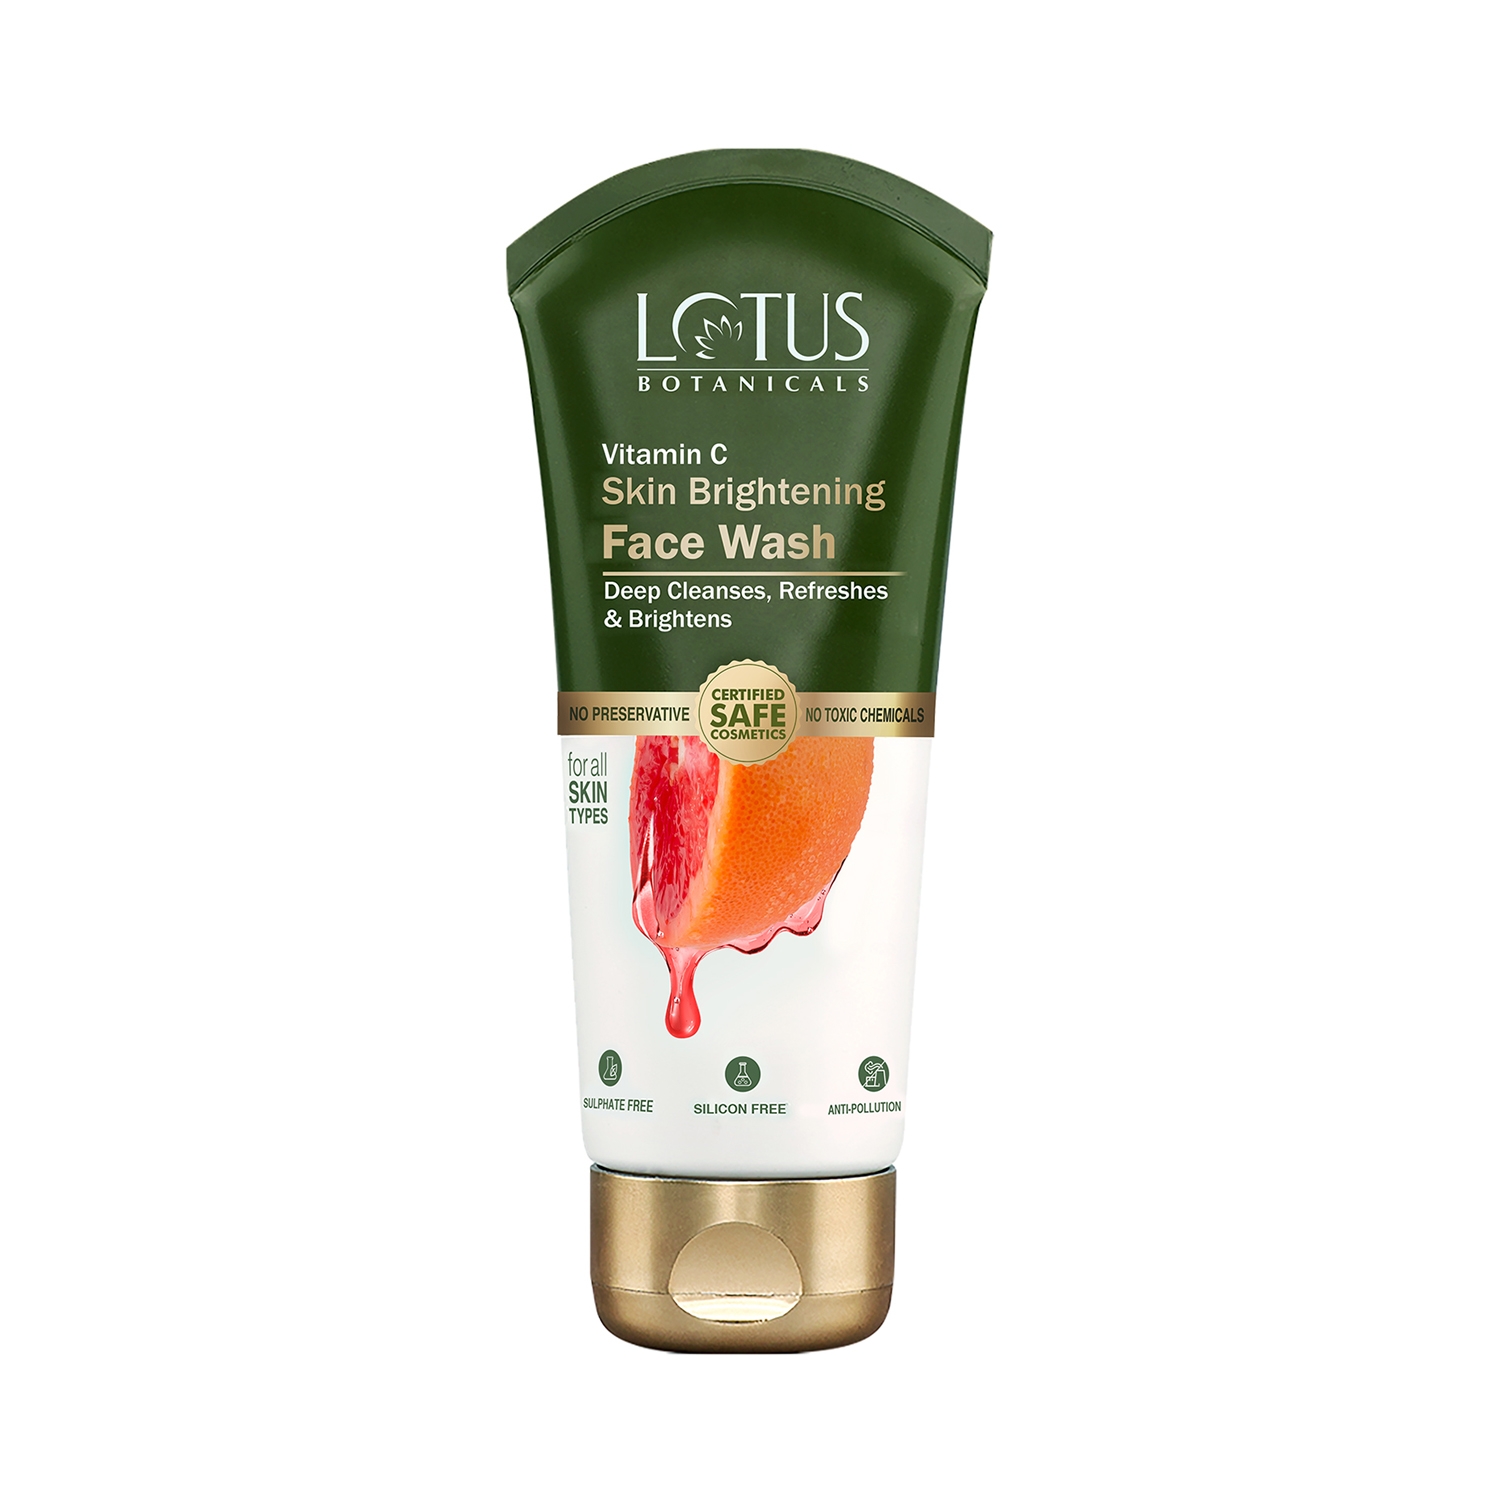 Lotus Botanicals | Lotus Botanicals Skin Brightening Face Wash (100ml)